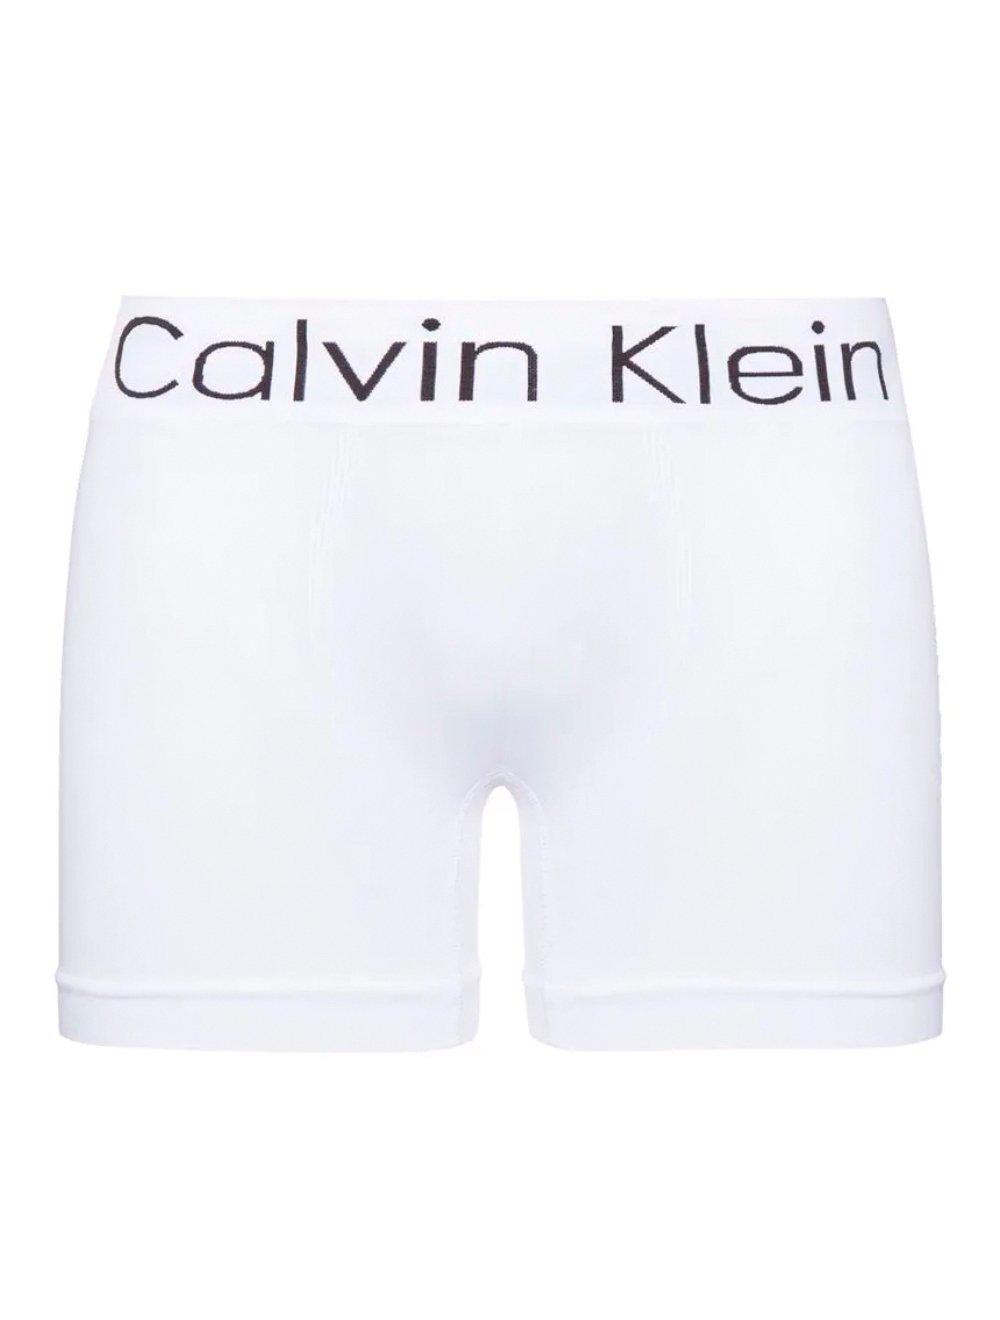 Cueca Calvin Klein Trunk Seamless Logo Branca